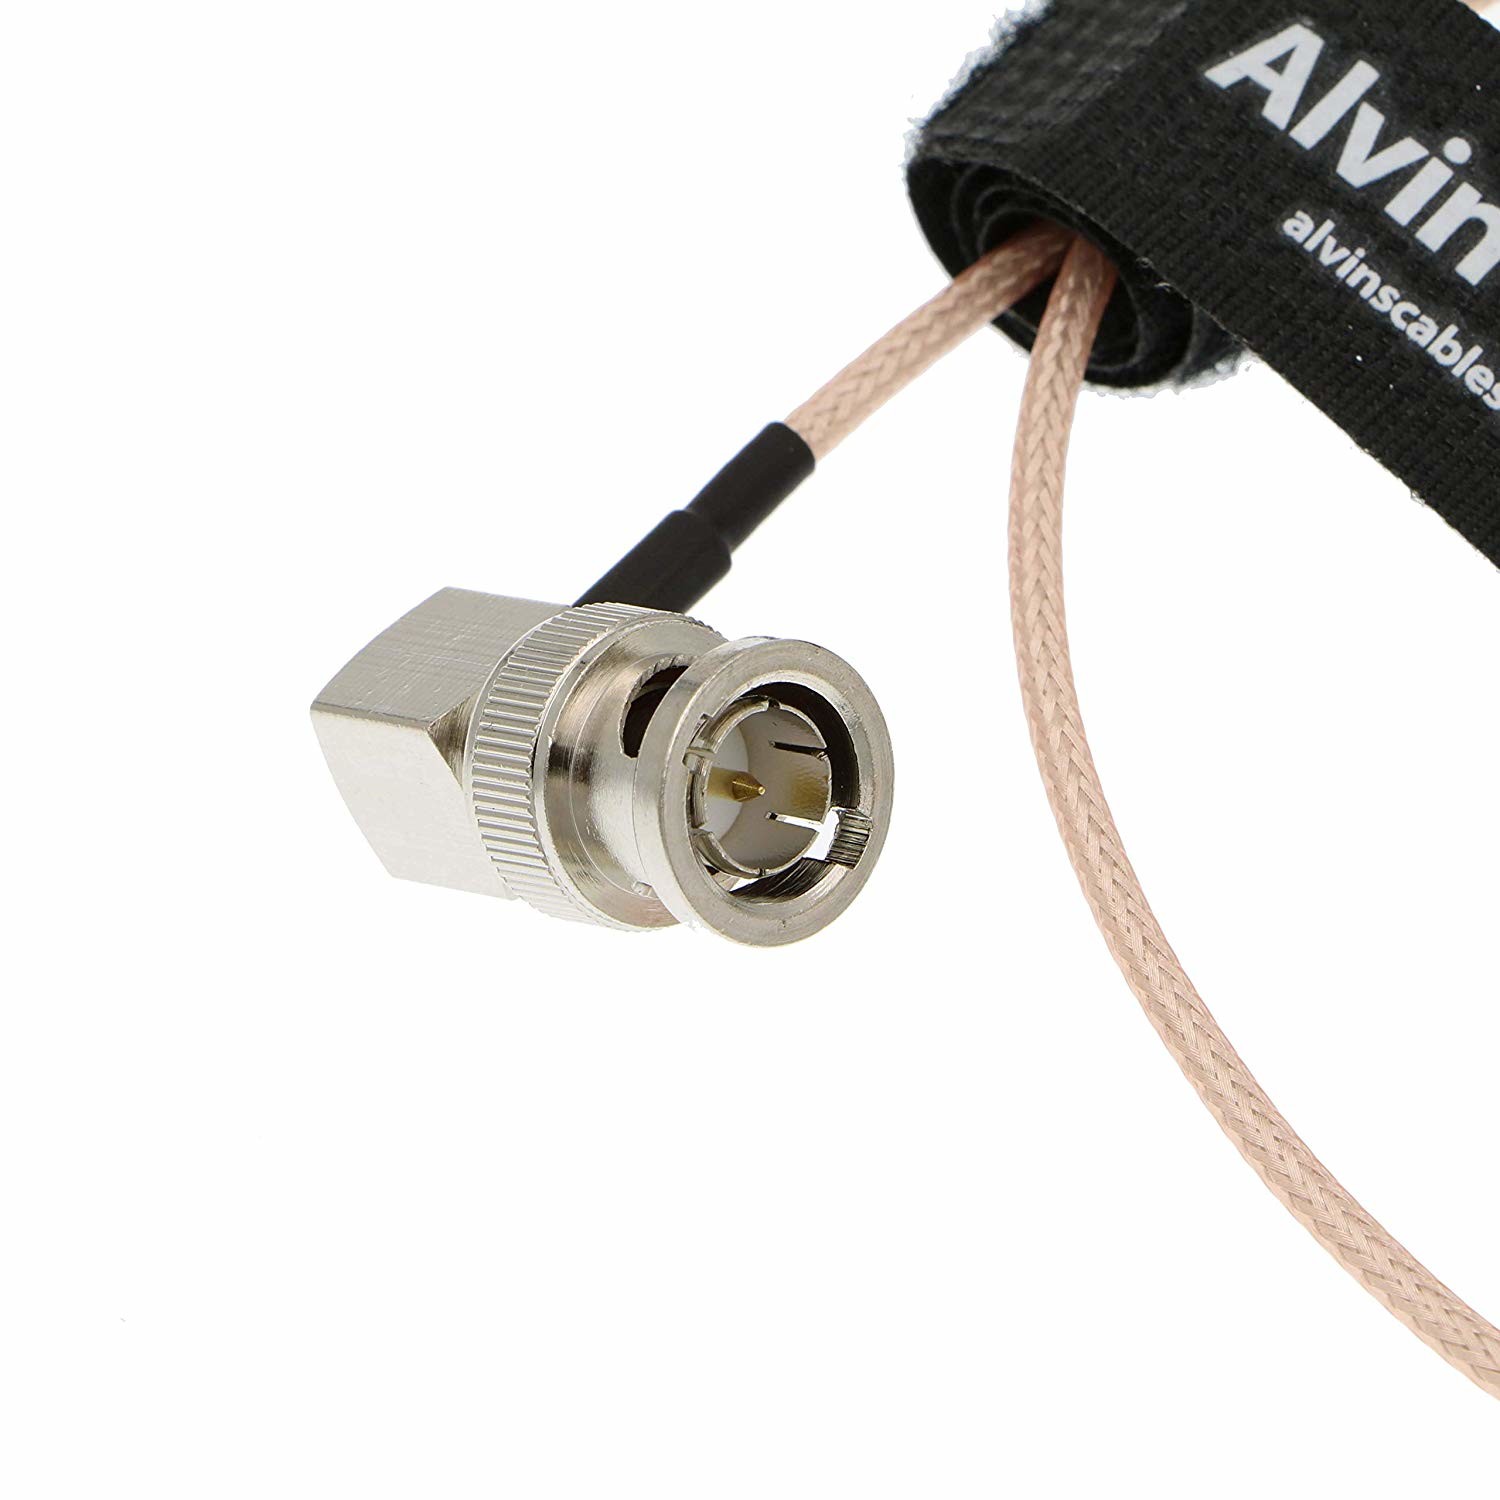 市場 Alvins Blackmagic Video Cables Out カメラ HD SDI BMCC 用の